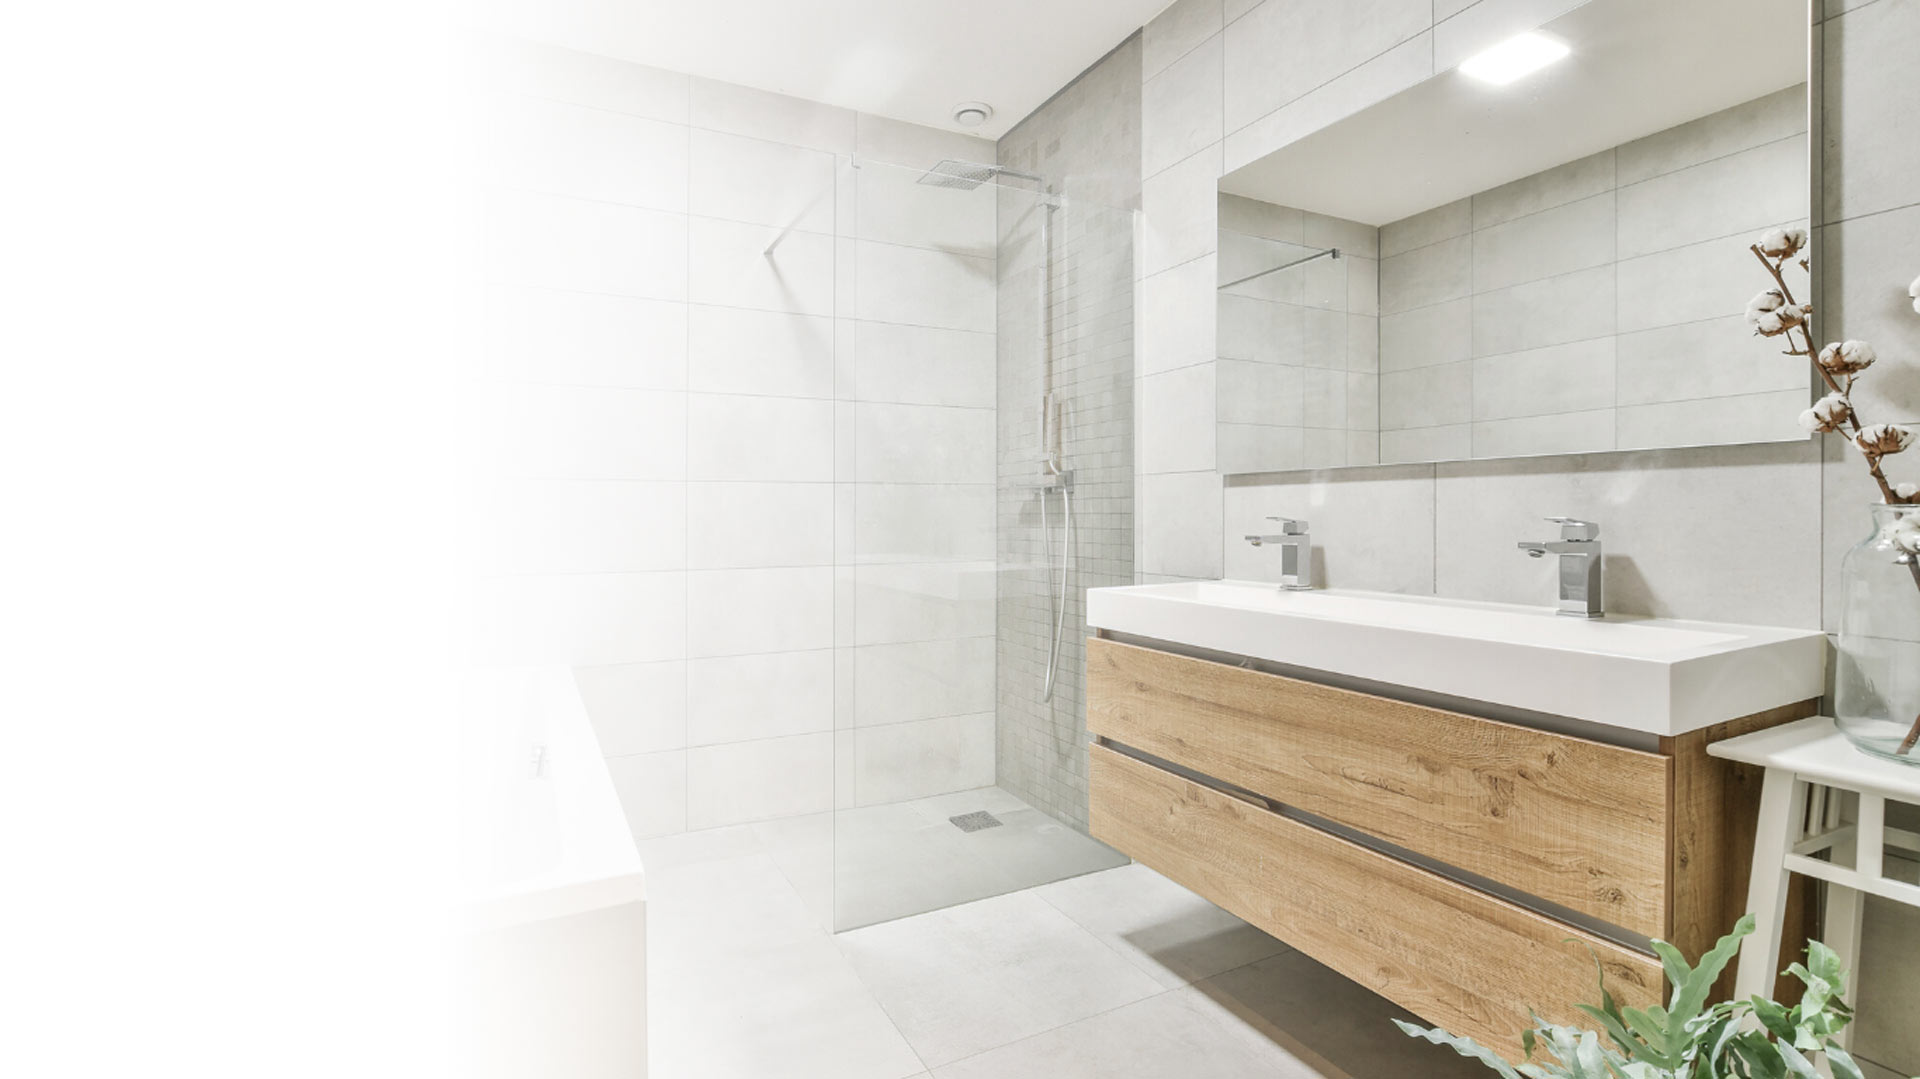 Full Bathroom Renovation Solutions